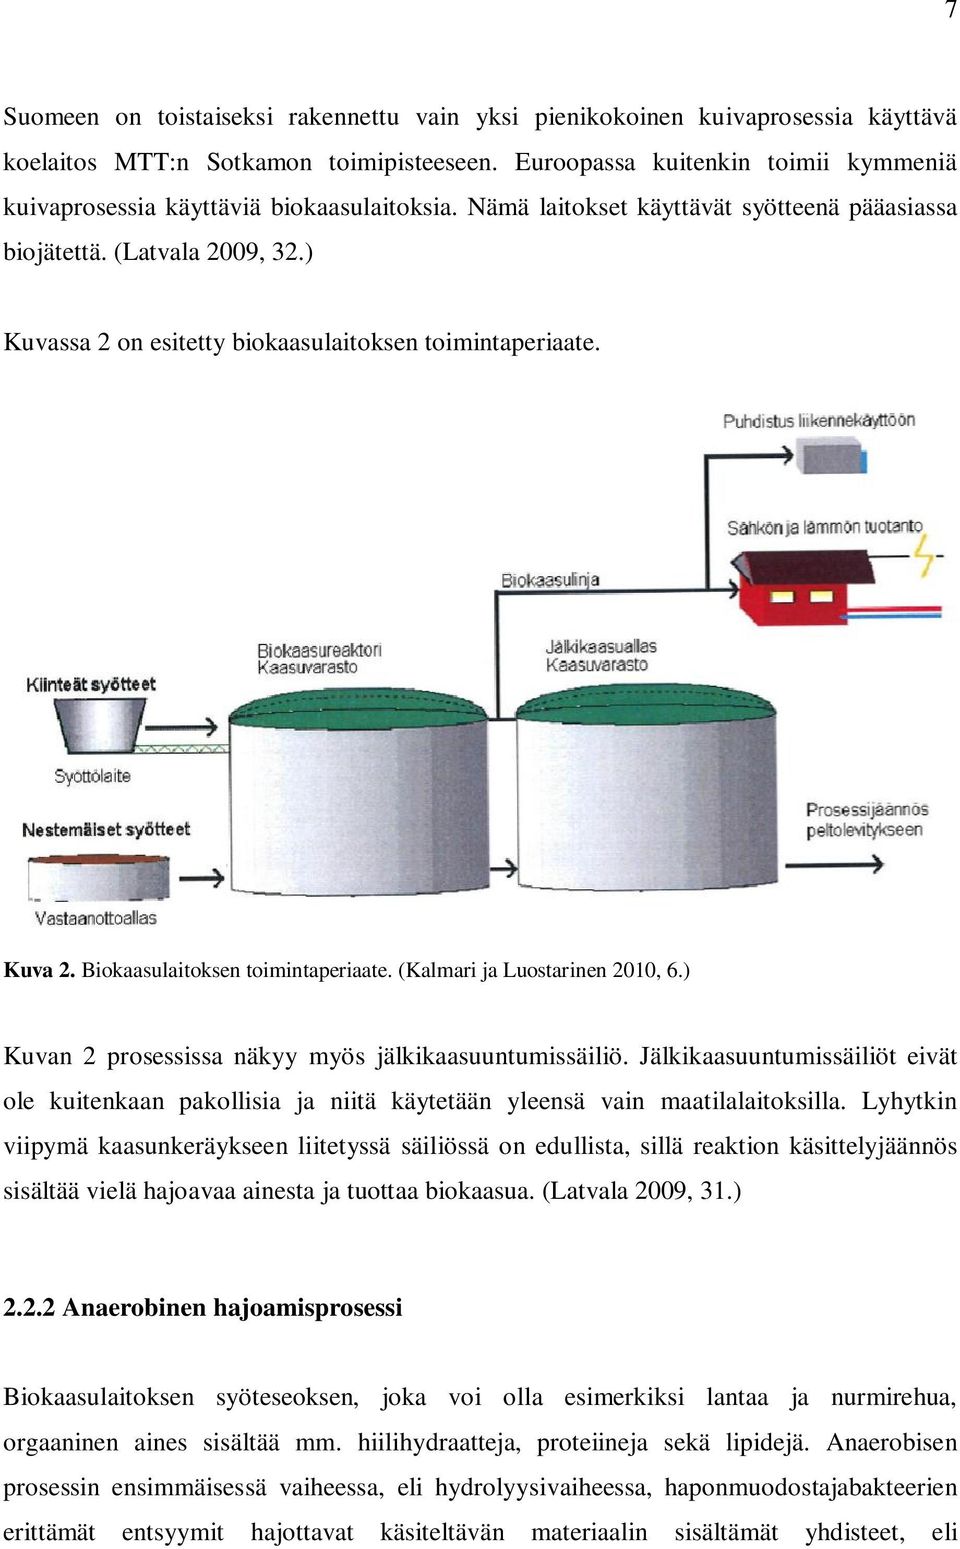 ) Kuvassa 2 on esitetty biokaasulaitoksen toimintaperiaate. Kuva 2. Biokaasulaitoksen toimintaperiaate. (Kalmari ja Luostarinen 2010, 6.) Kuvan 2 prosessissa näkyy myös jälkikaasuuntumissäiliö.